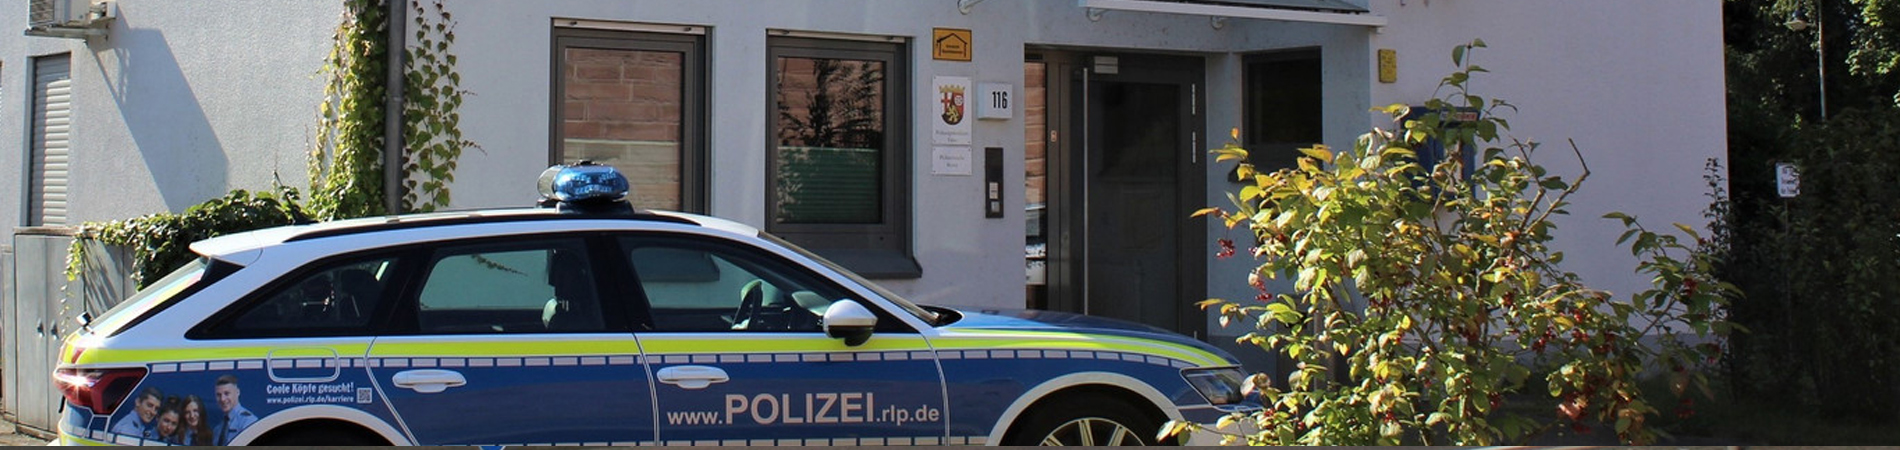 Dienstgebäude Polizeiwache Konz